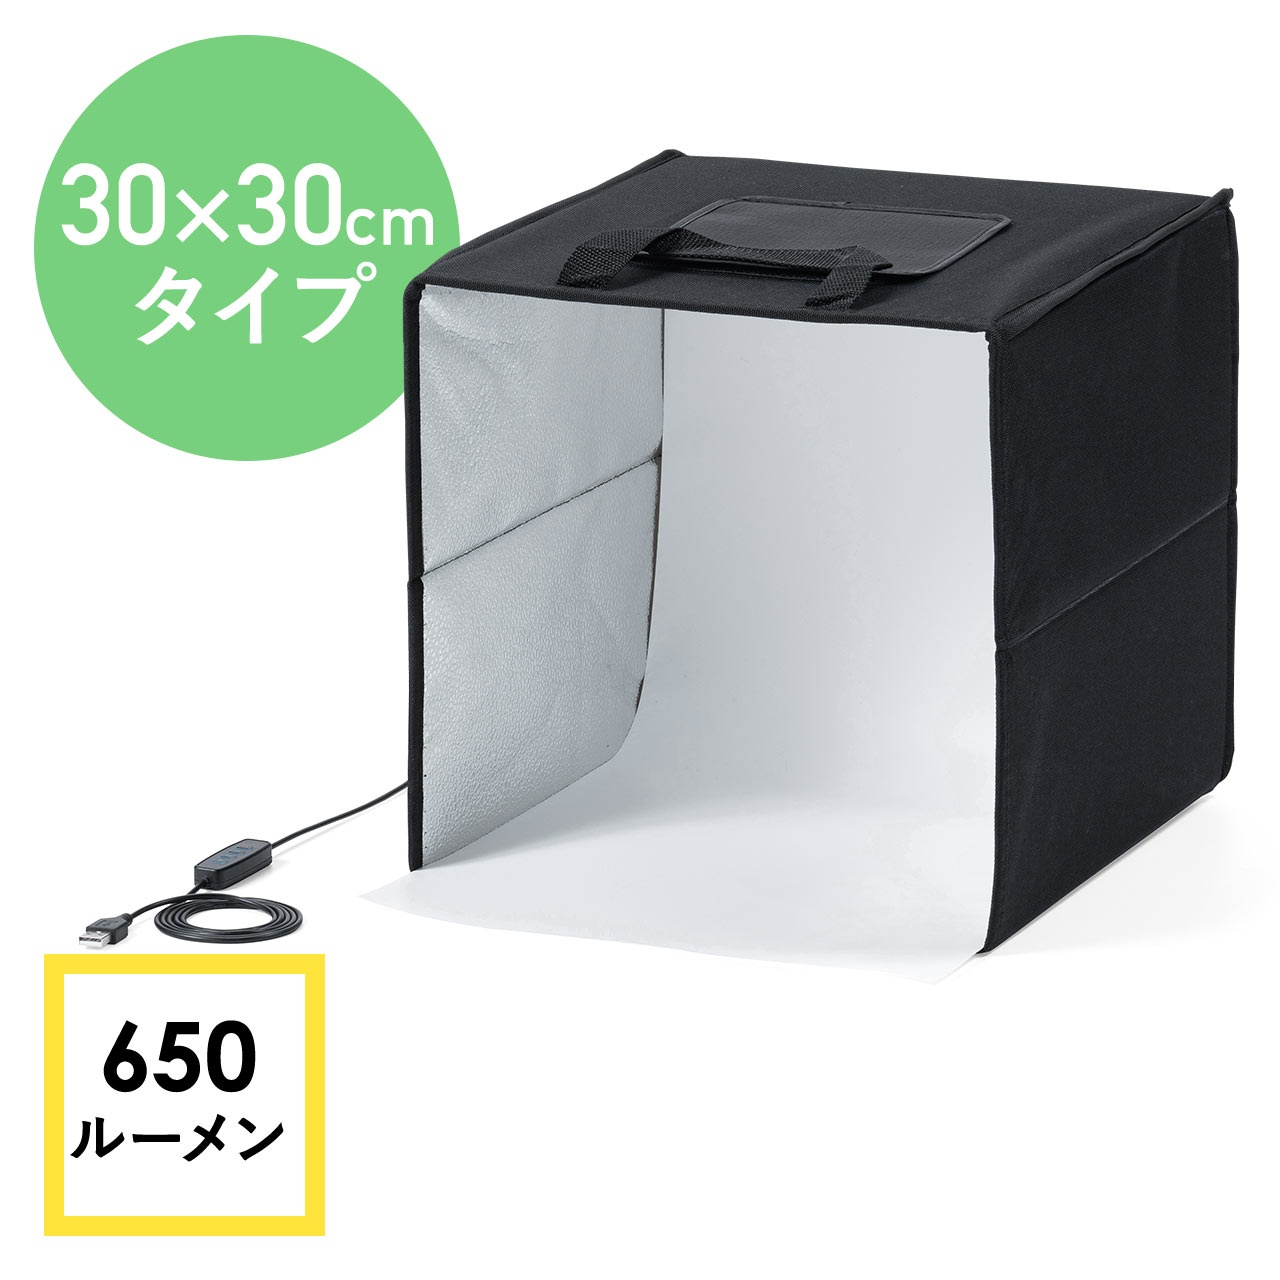 撮影ボックス 30cm ライト付 折りたたみ 背景6色付属 USB電源 調光可能 650ルーメン 200-DG021